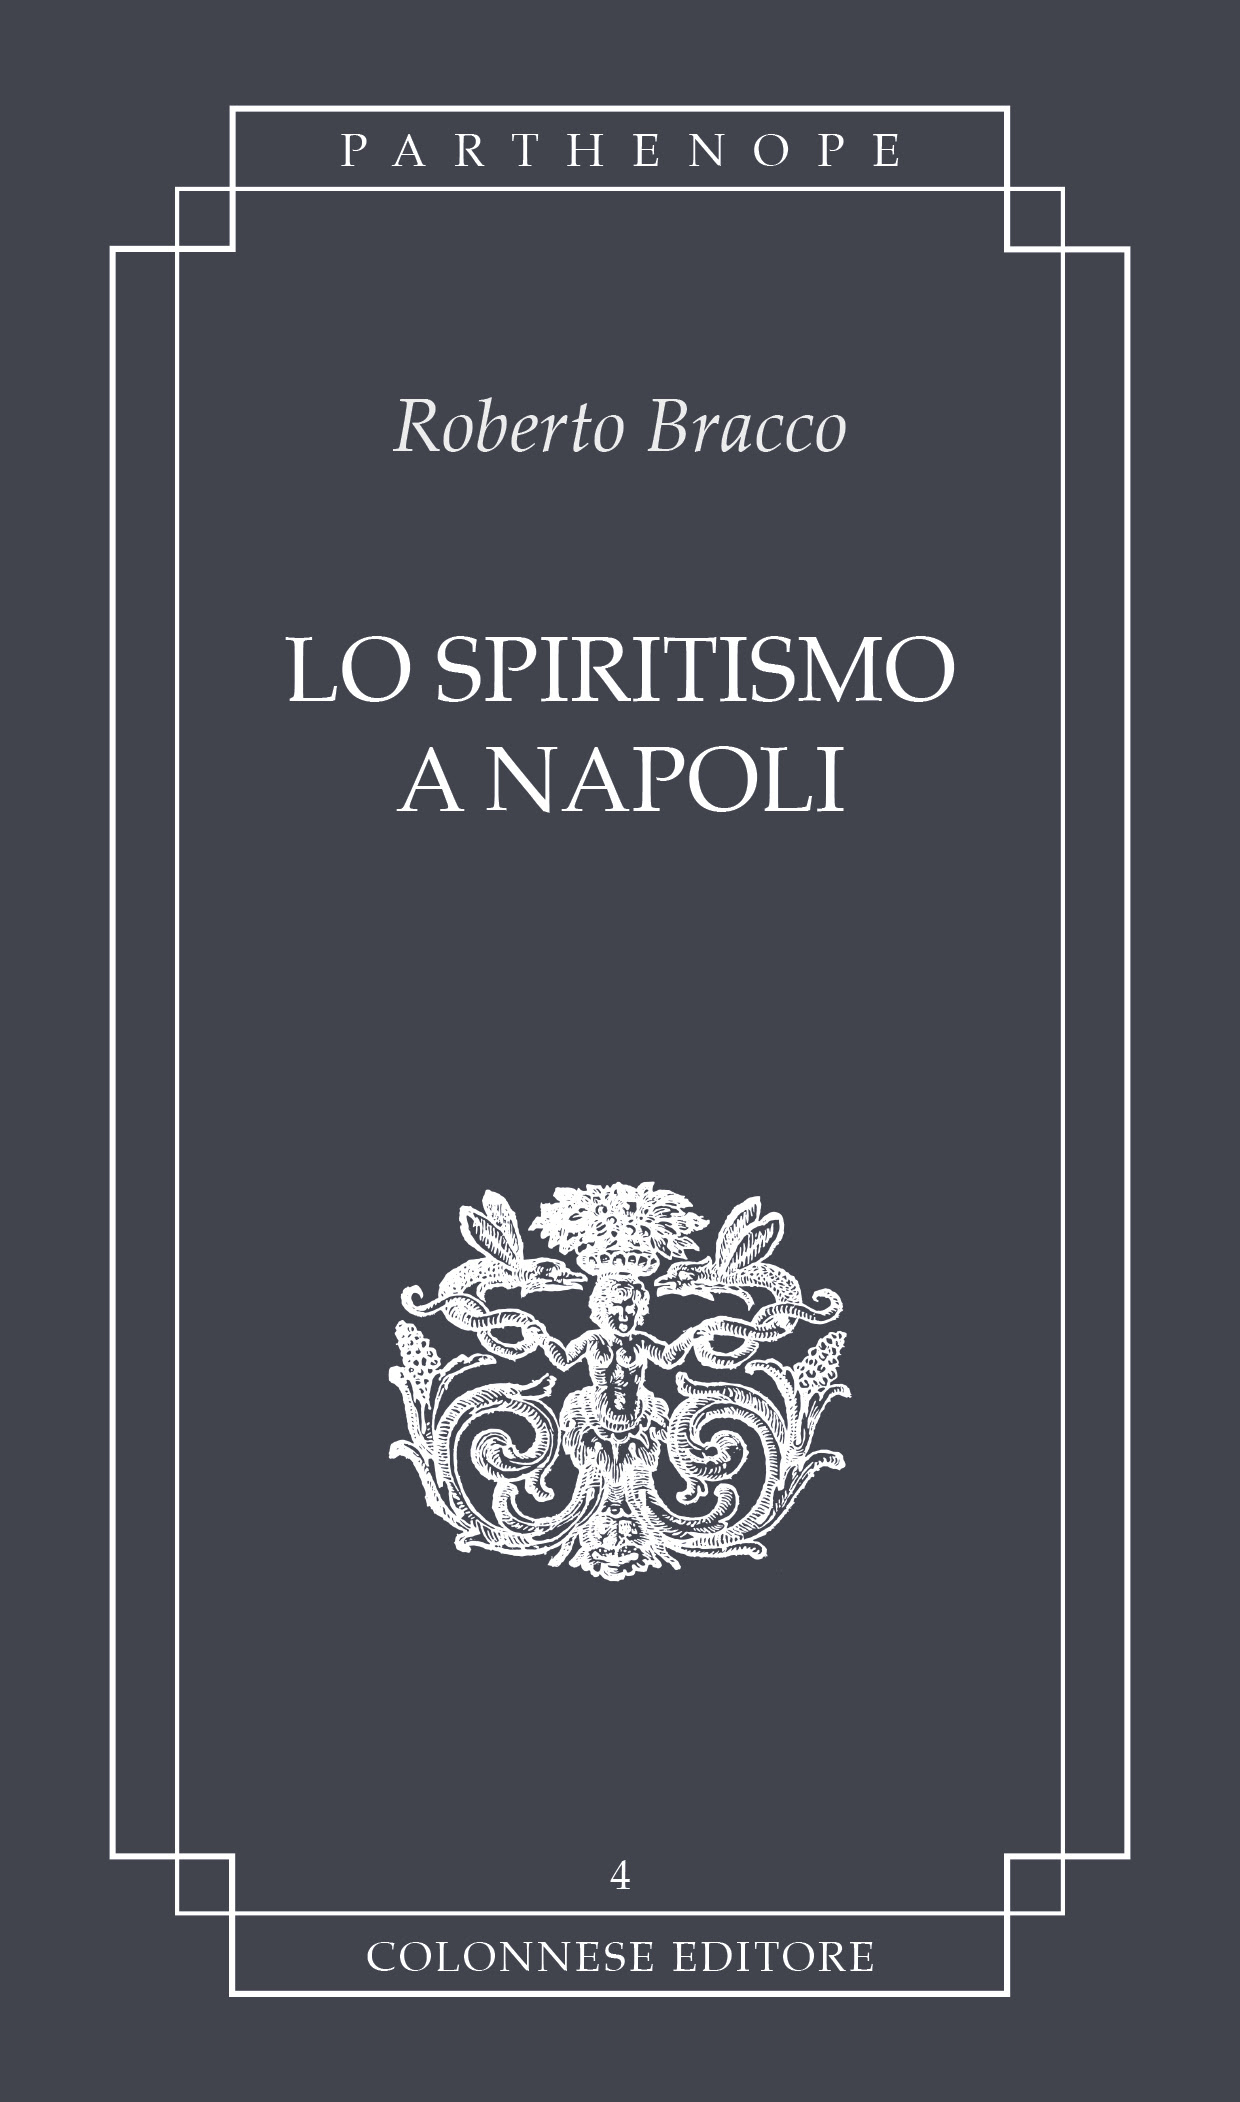 Torna in libreria "Lo Spiritismo a Napoli", di Roberto Bracco